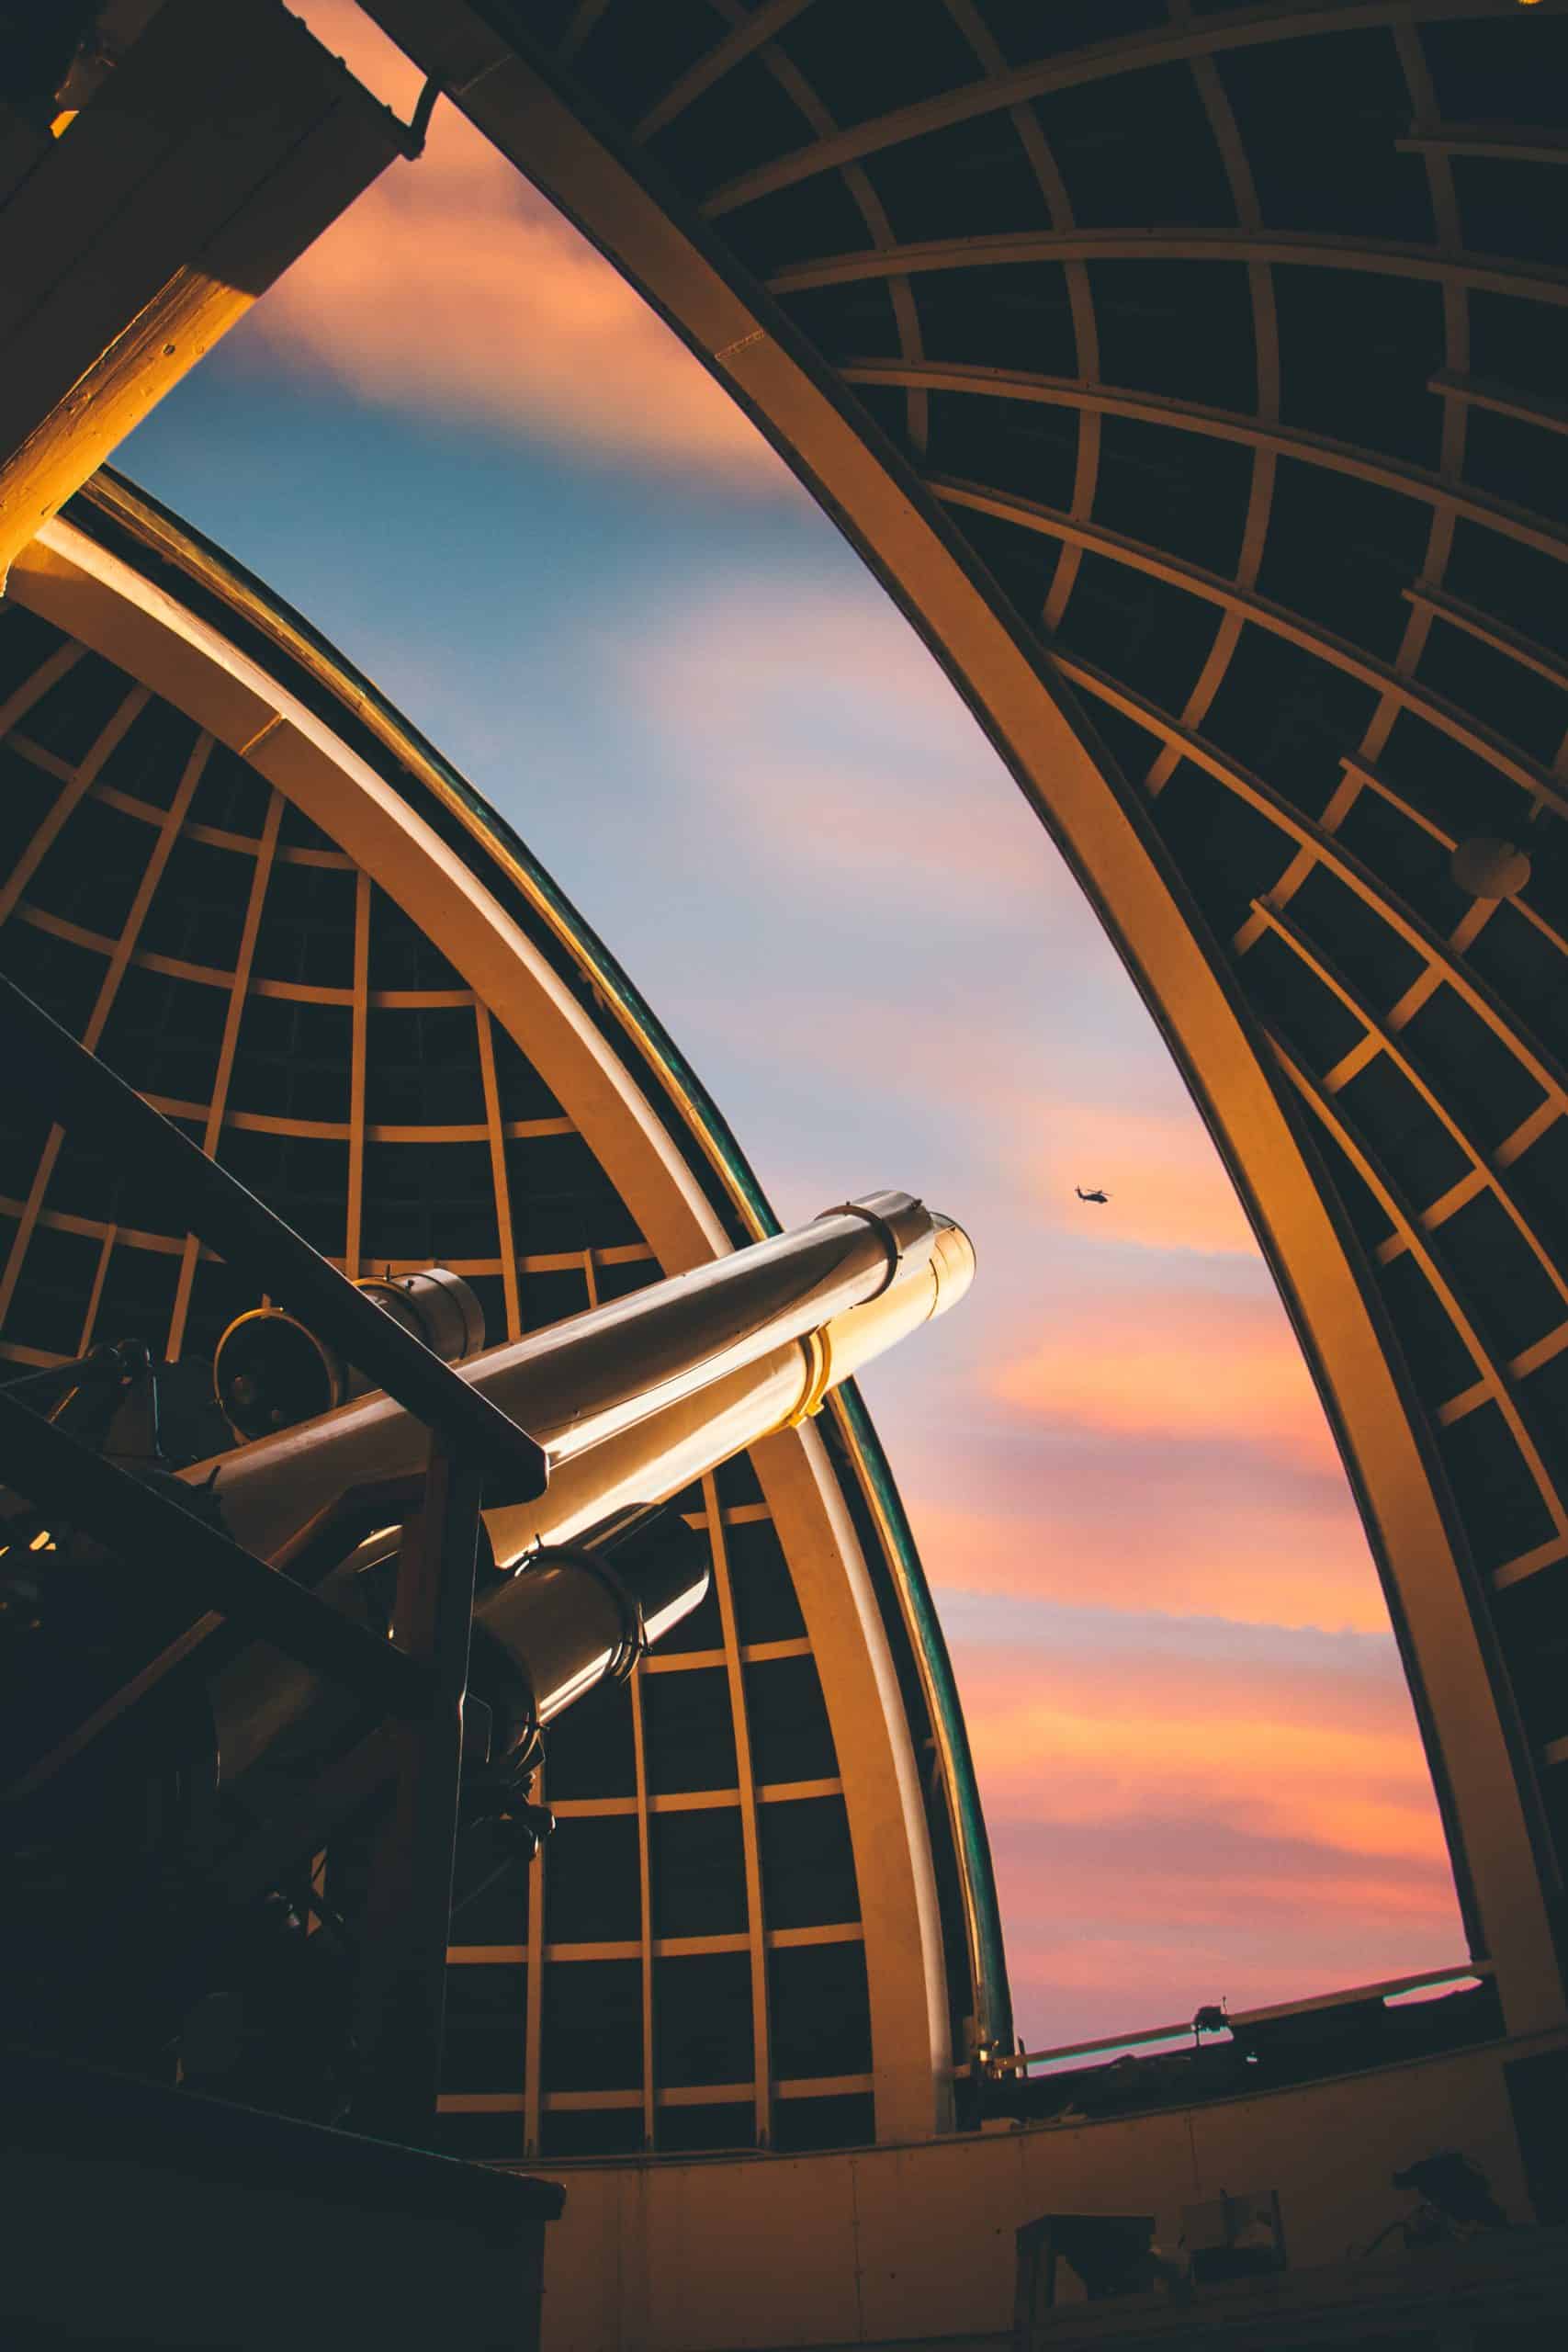 Telescope